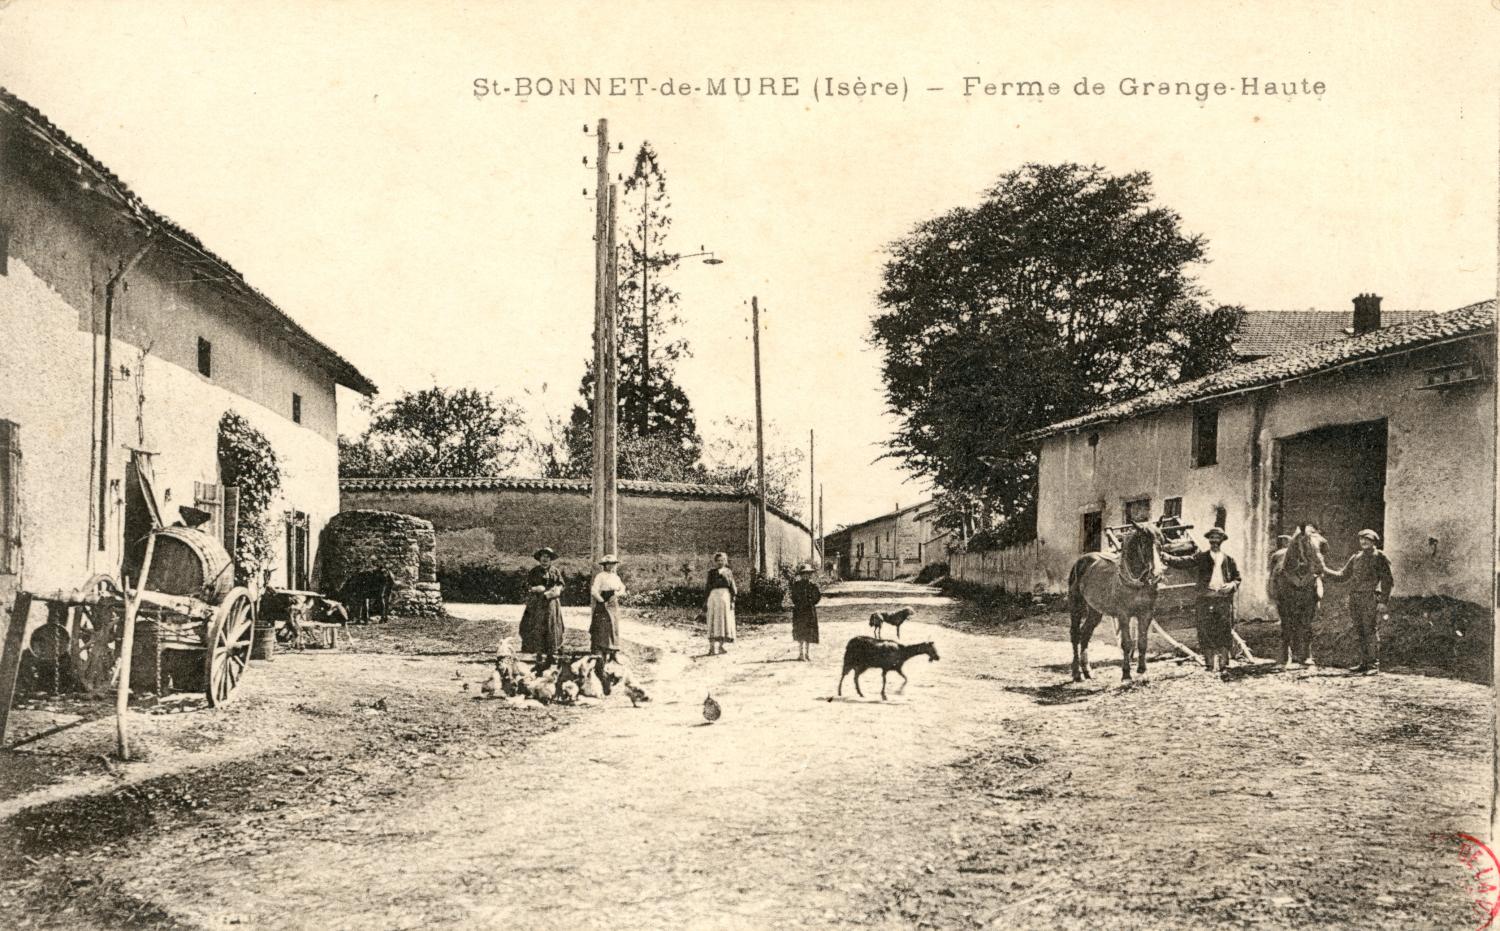 St-Bonnet-de-Mure (Isère). - Ferme de Grange-Haute